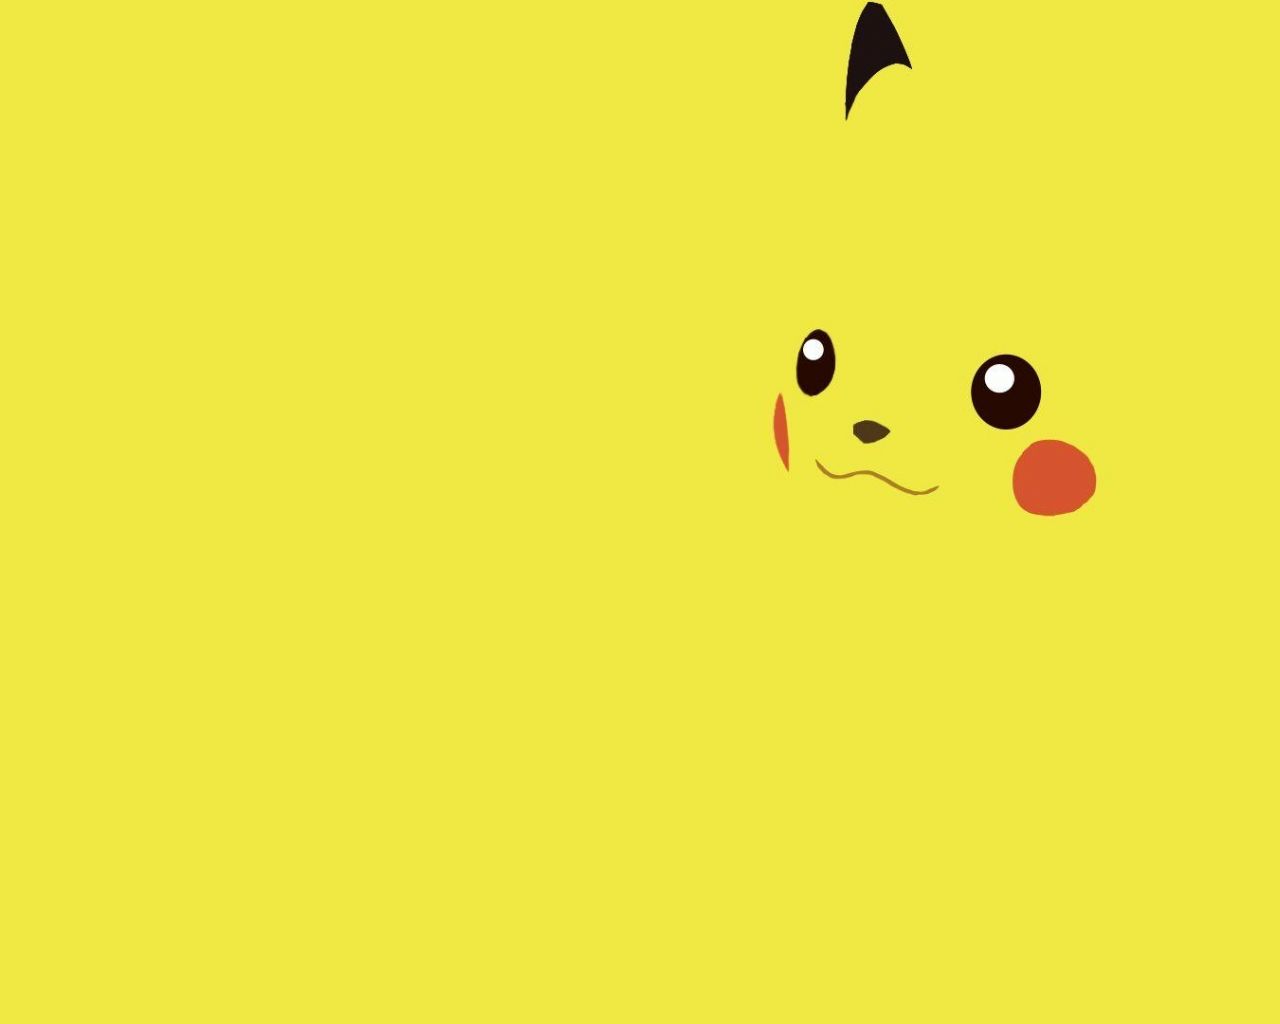 Free download Pokemon Pikachu Wallpaper [1920x1080]